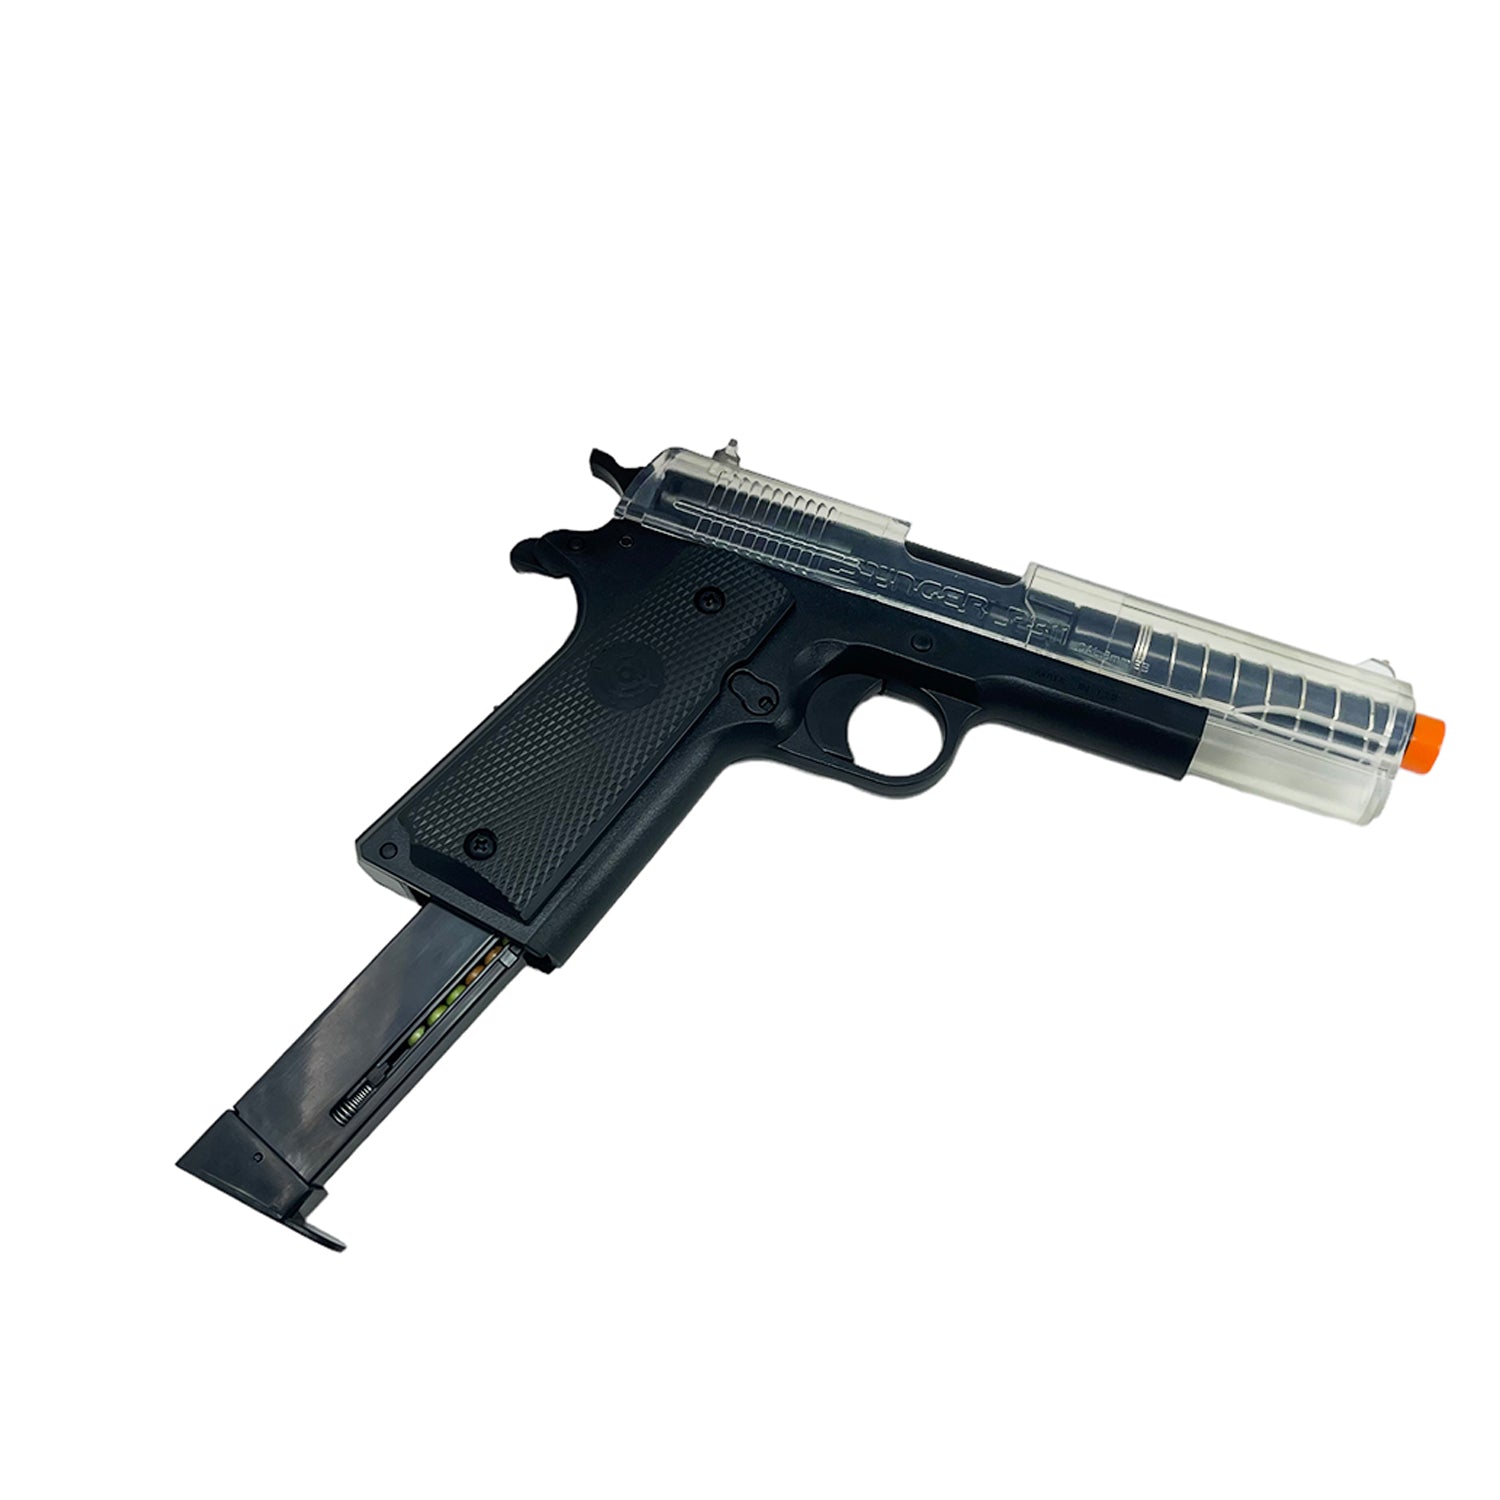 Pistolas en Kit modelo Stinger ™ Challenge